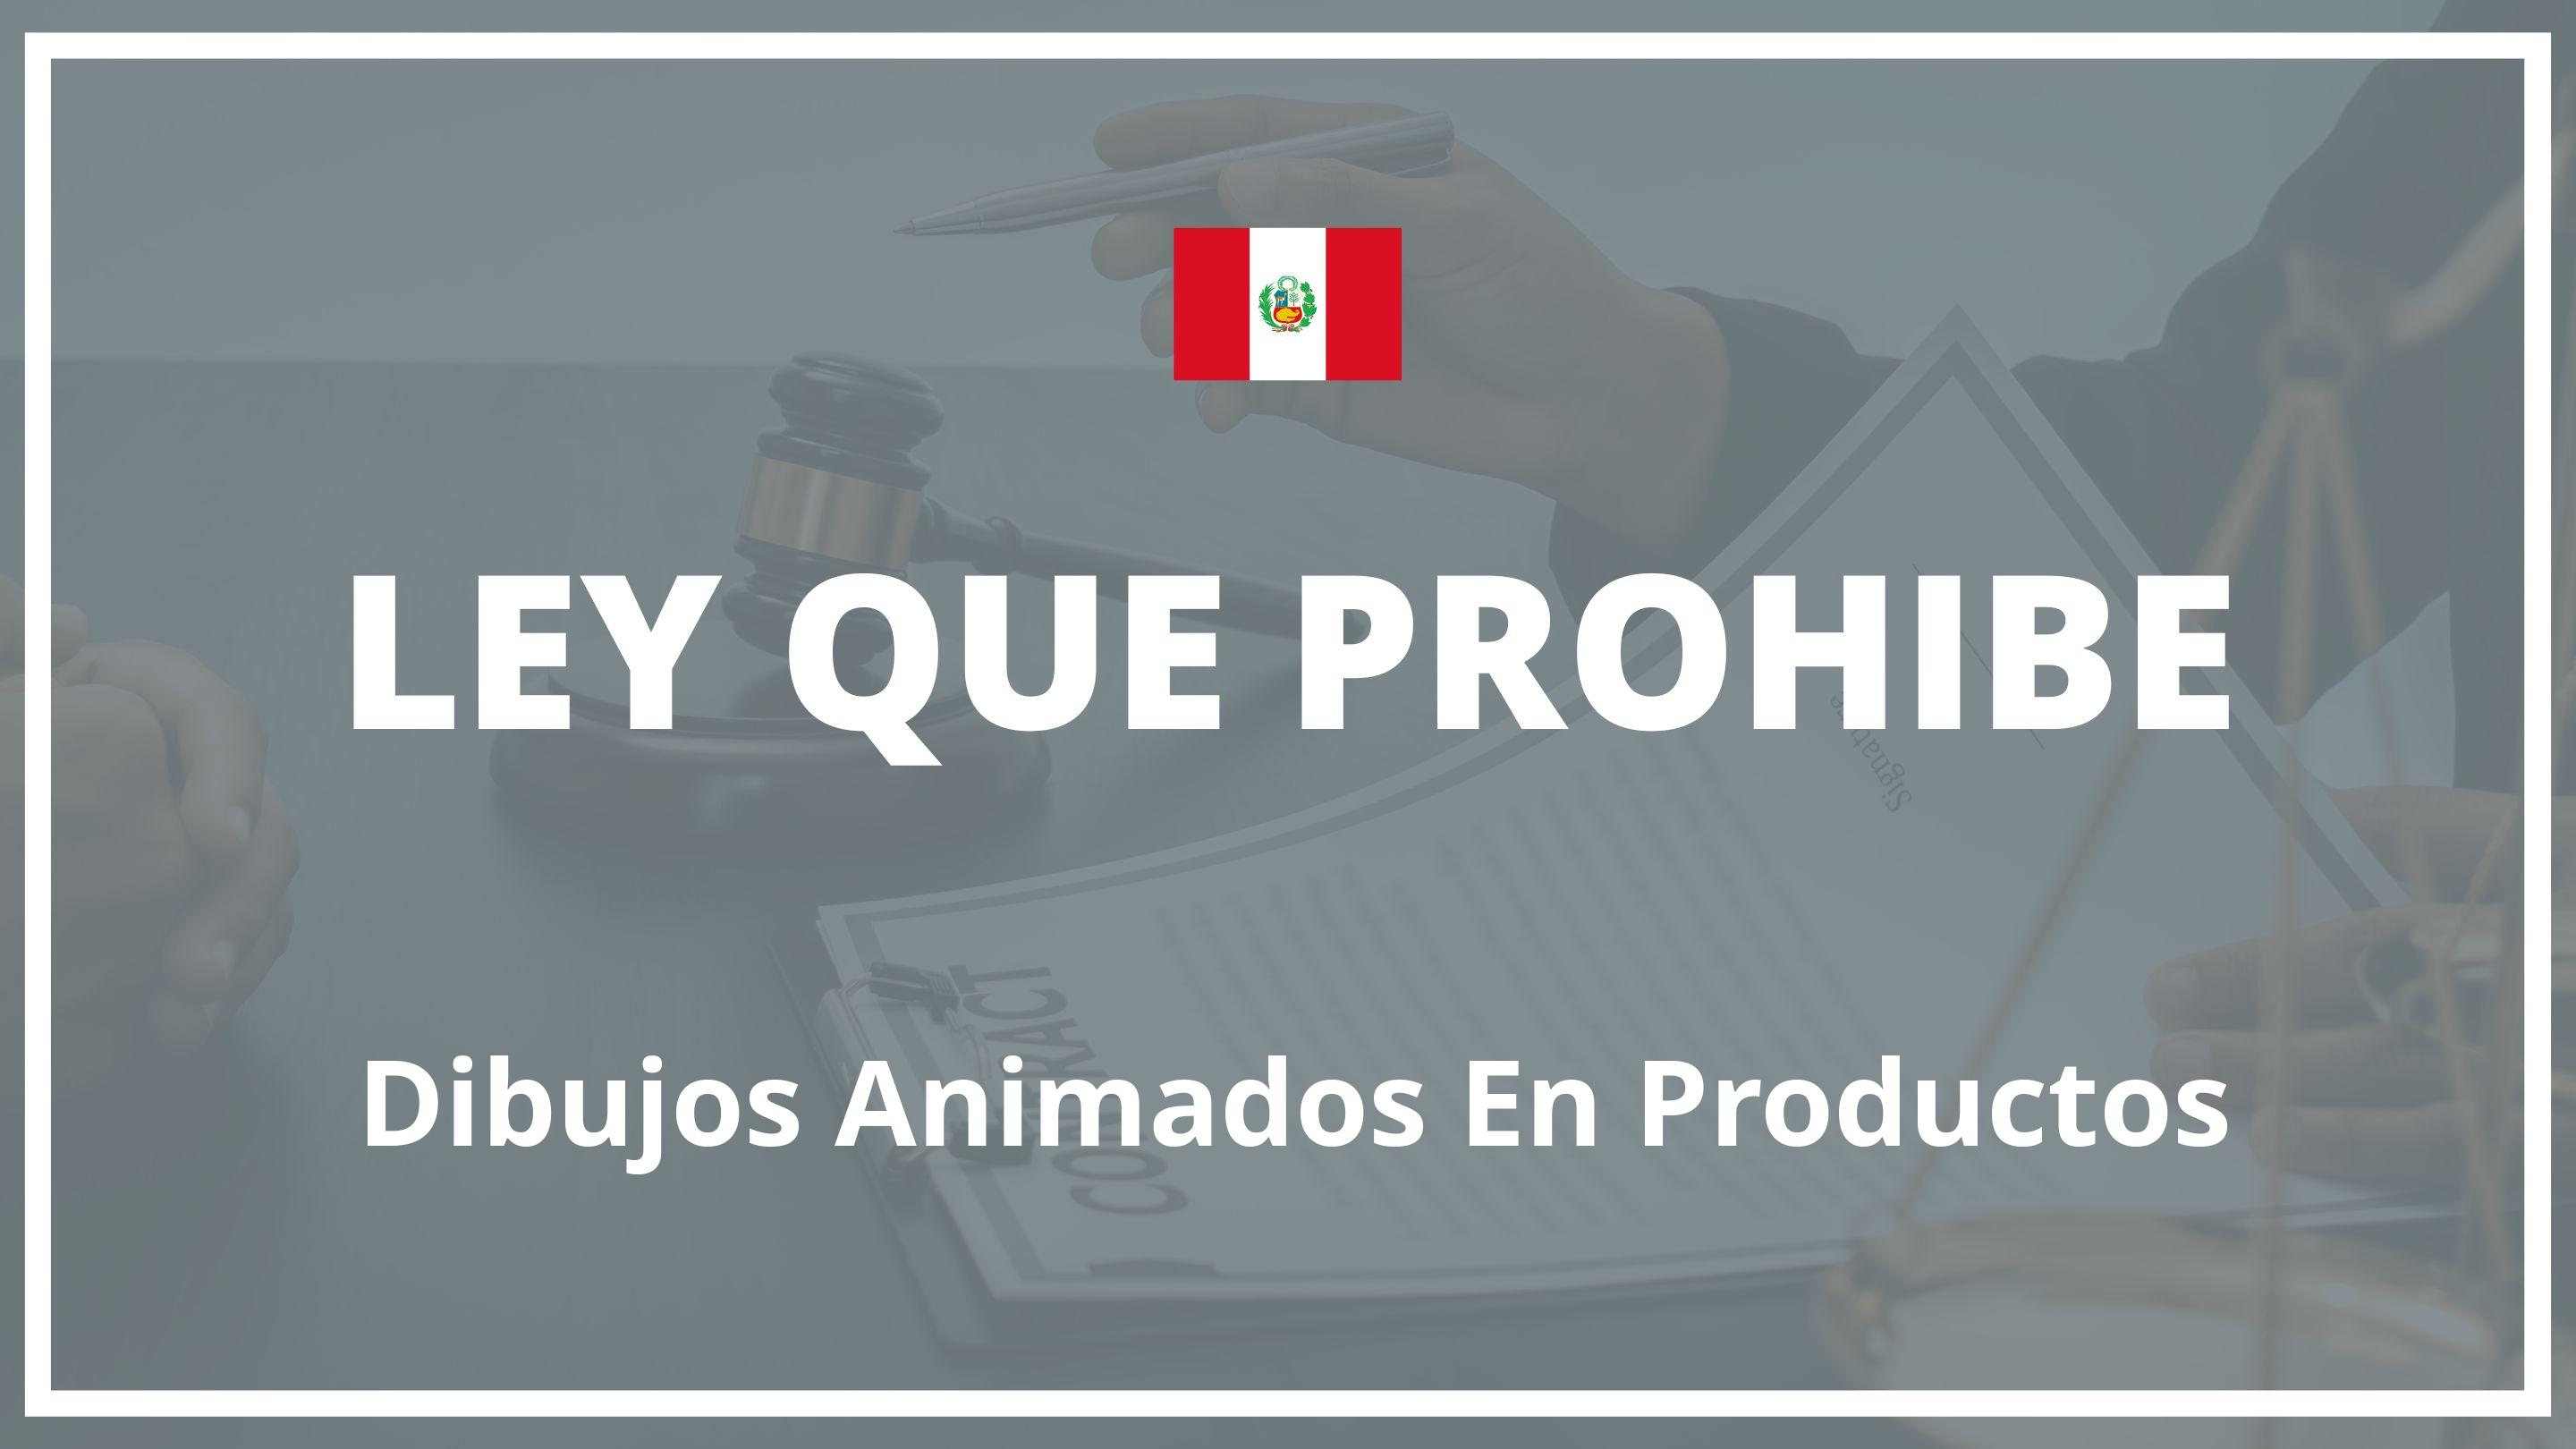 Ley que prohibe dibujos animados en productos Peru